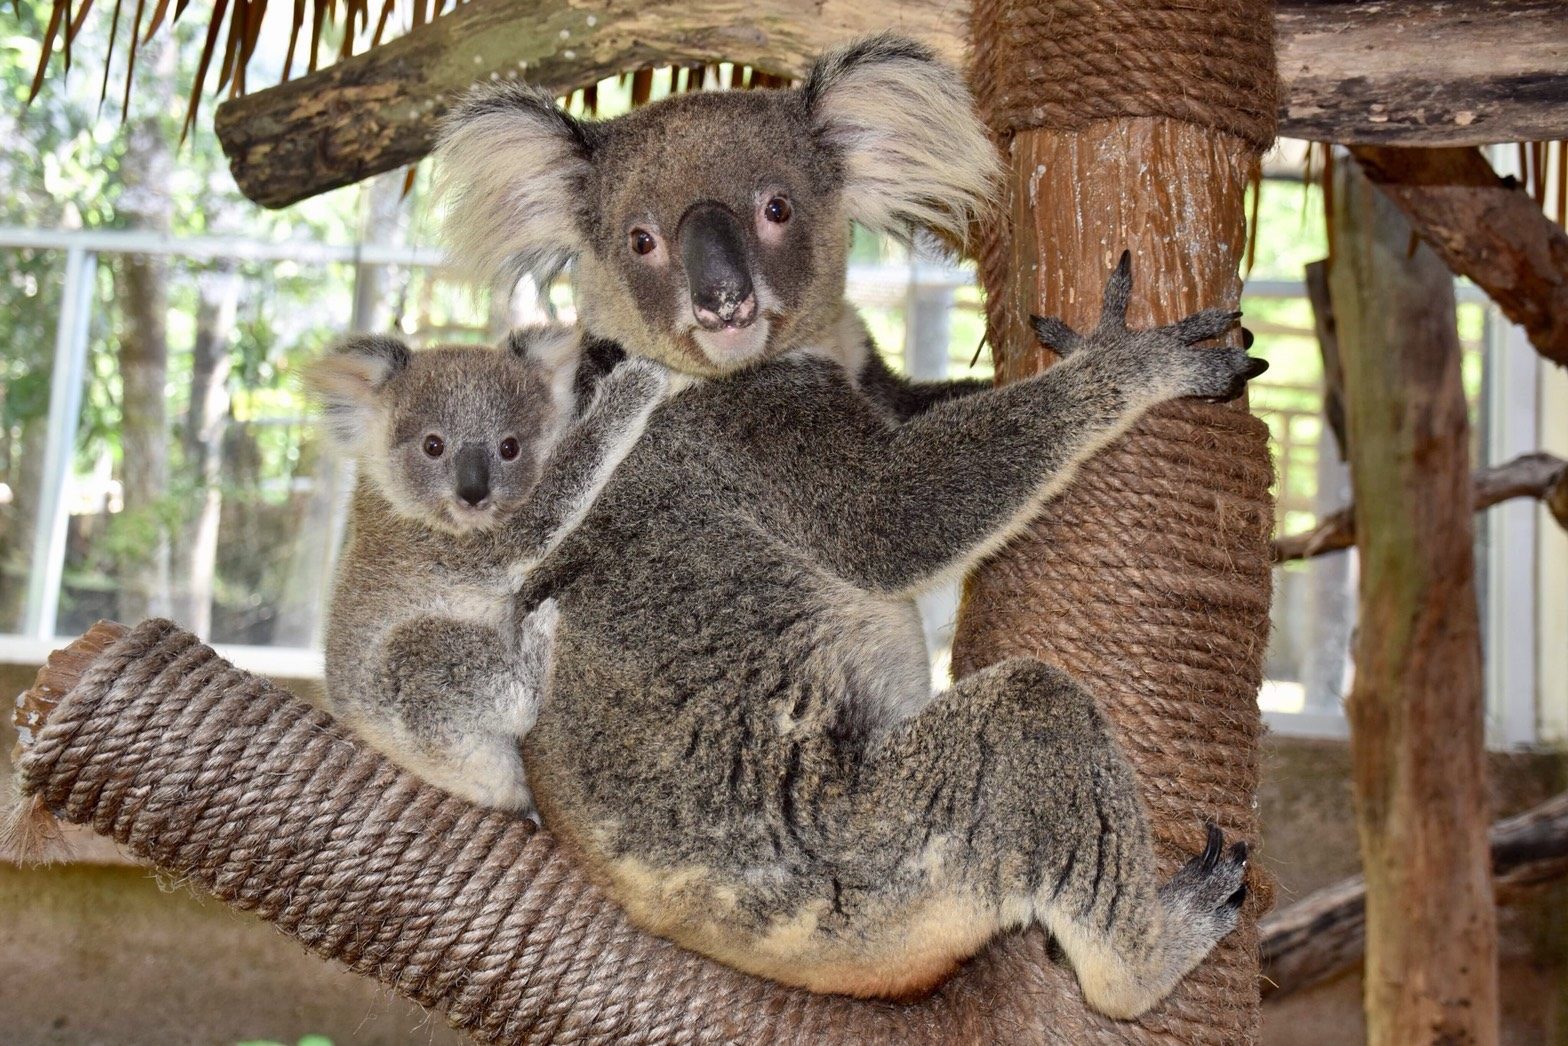 ฉลอง 41 ปี สวนสัตว์เขาเขียว ชมลูกโคอาล่าจากออสเตรเลีย